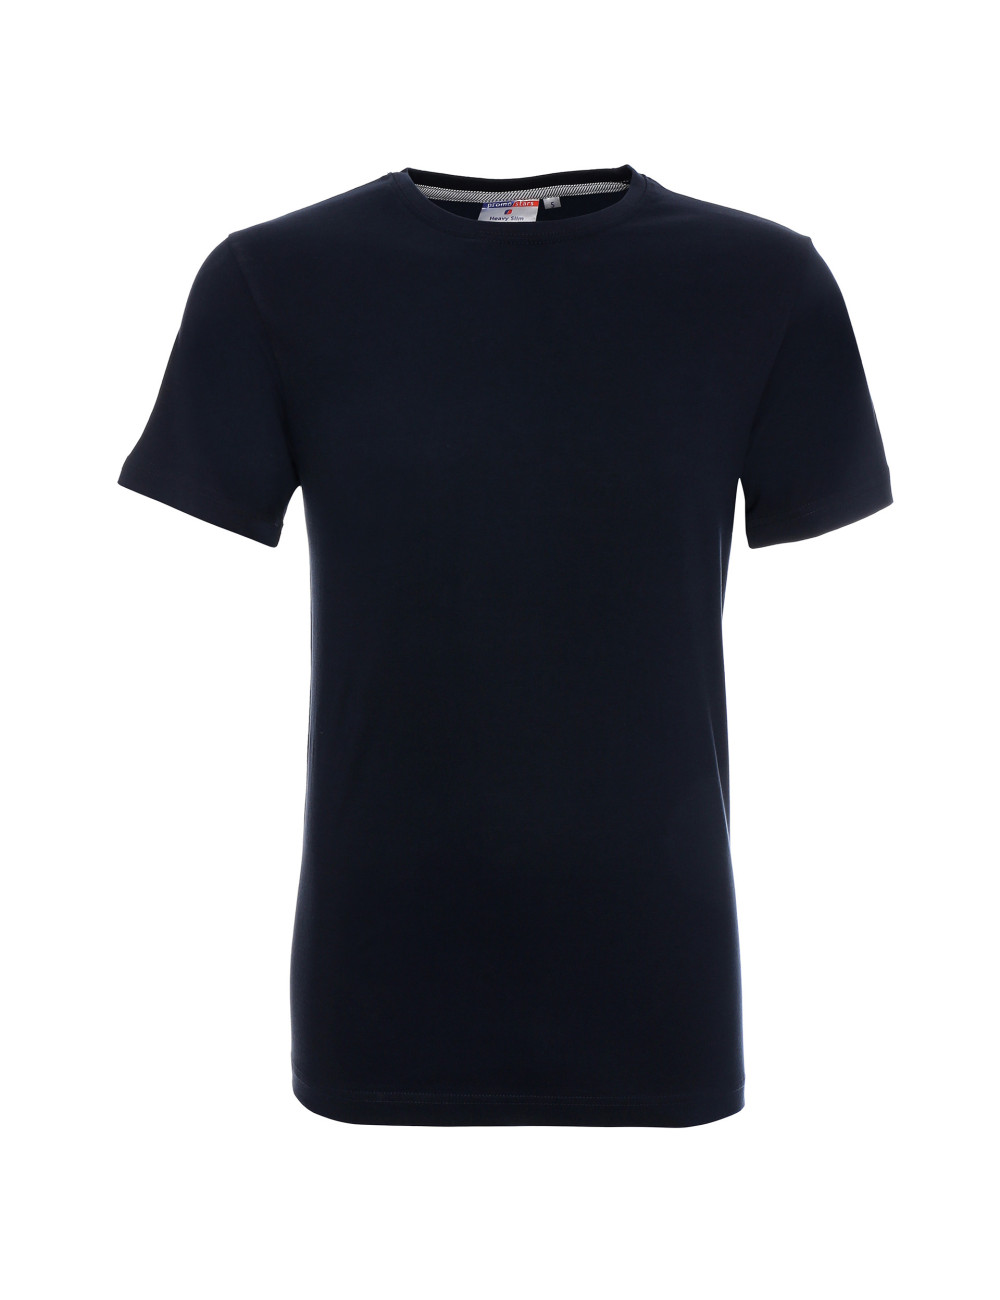 Schweres, schmales Herren-T-Shirt, marineblau von Promostars